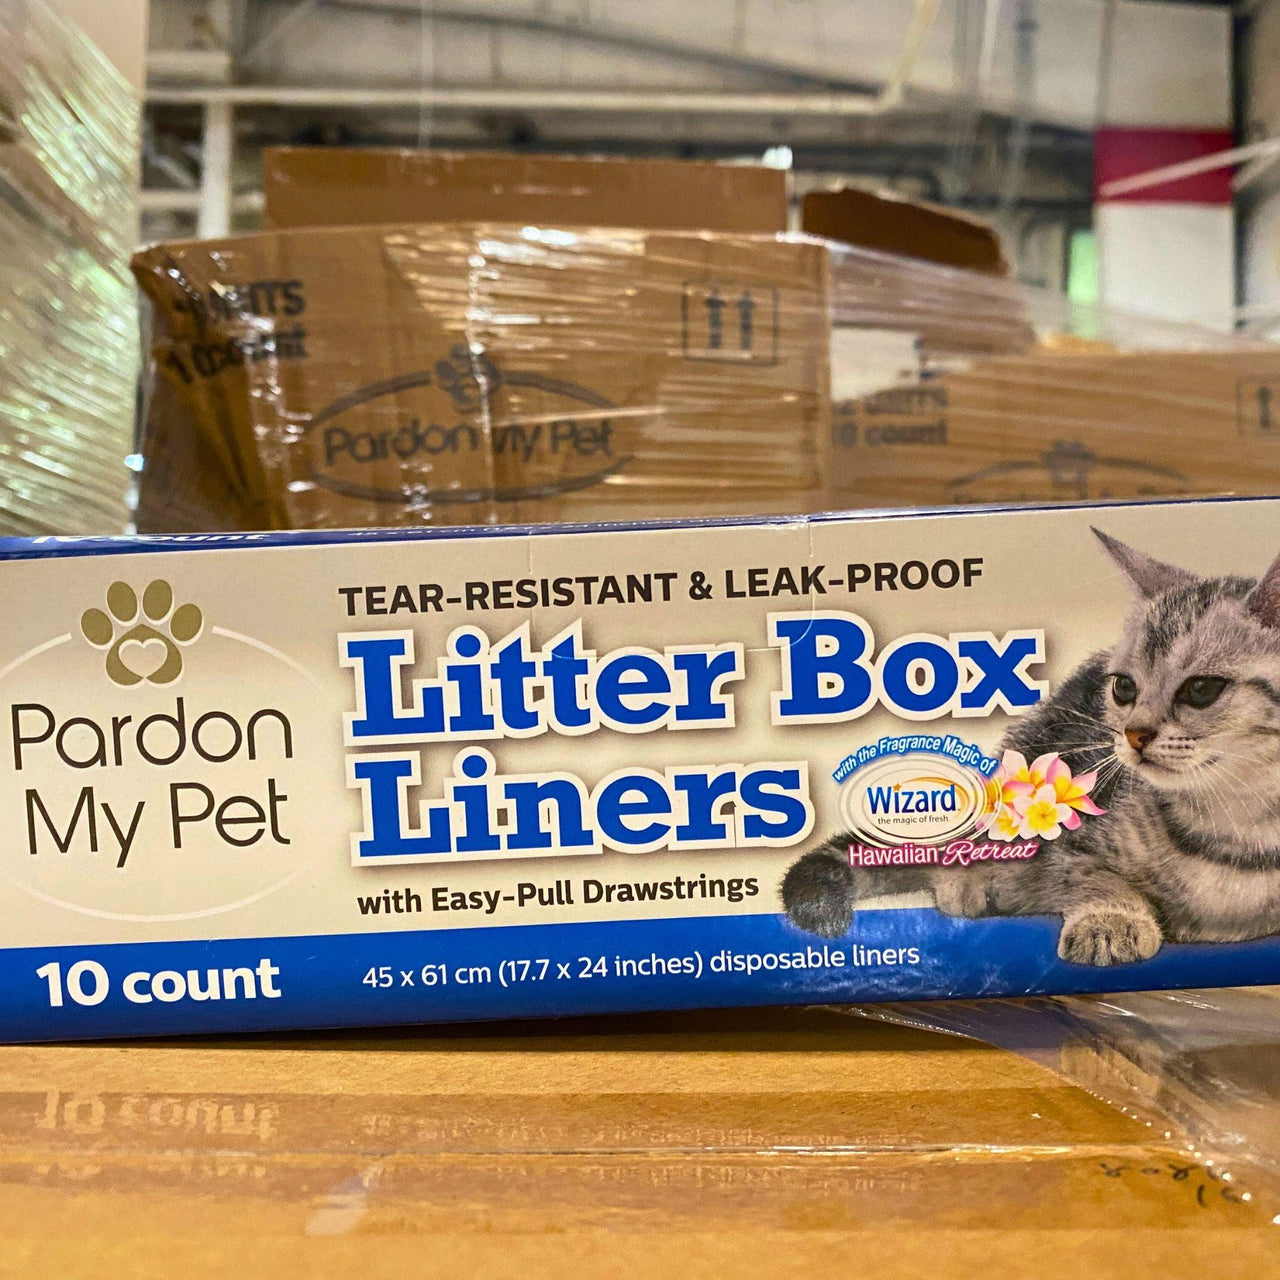 Pardon My Pet Litter Box Liners (48 Pcs Lot) - Discount Wholesalers Inc